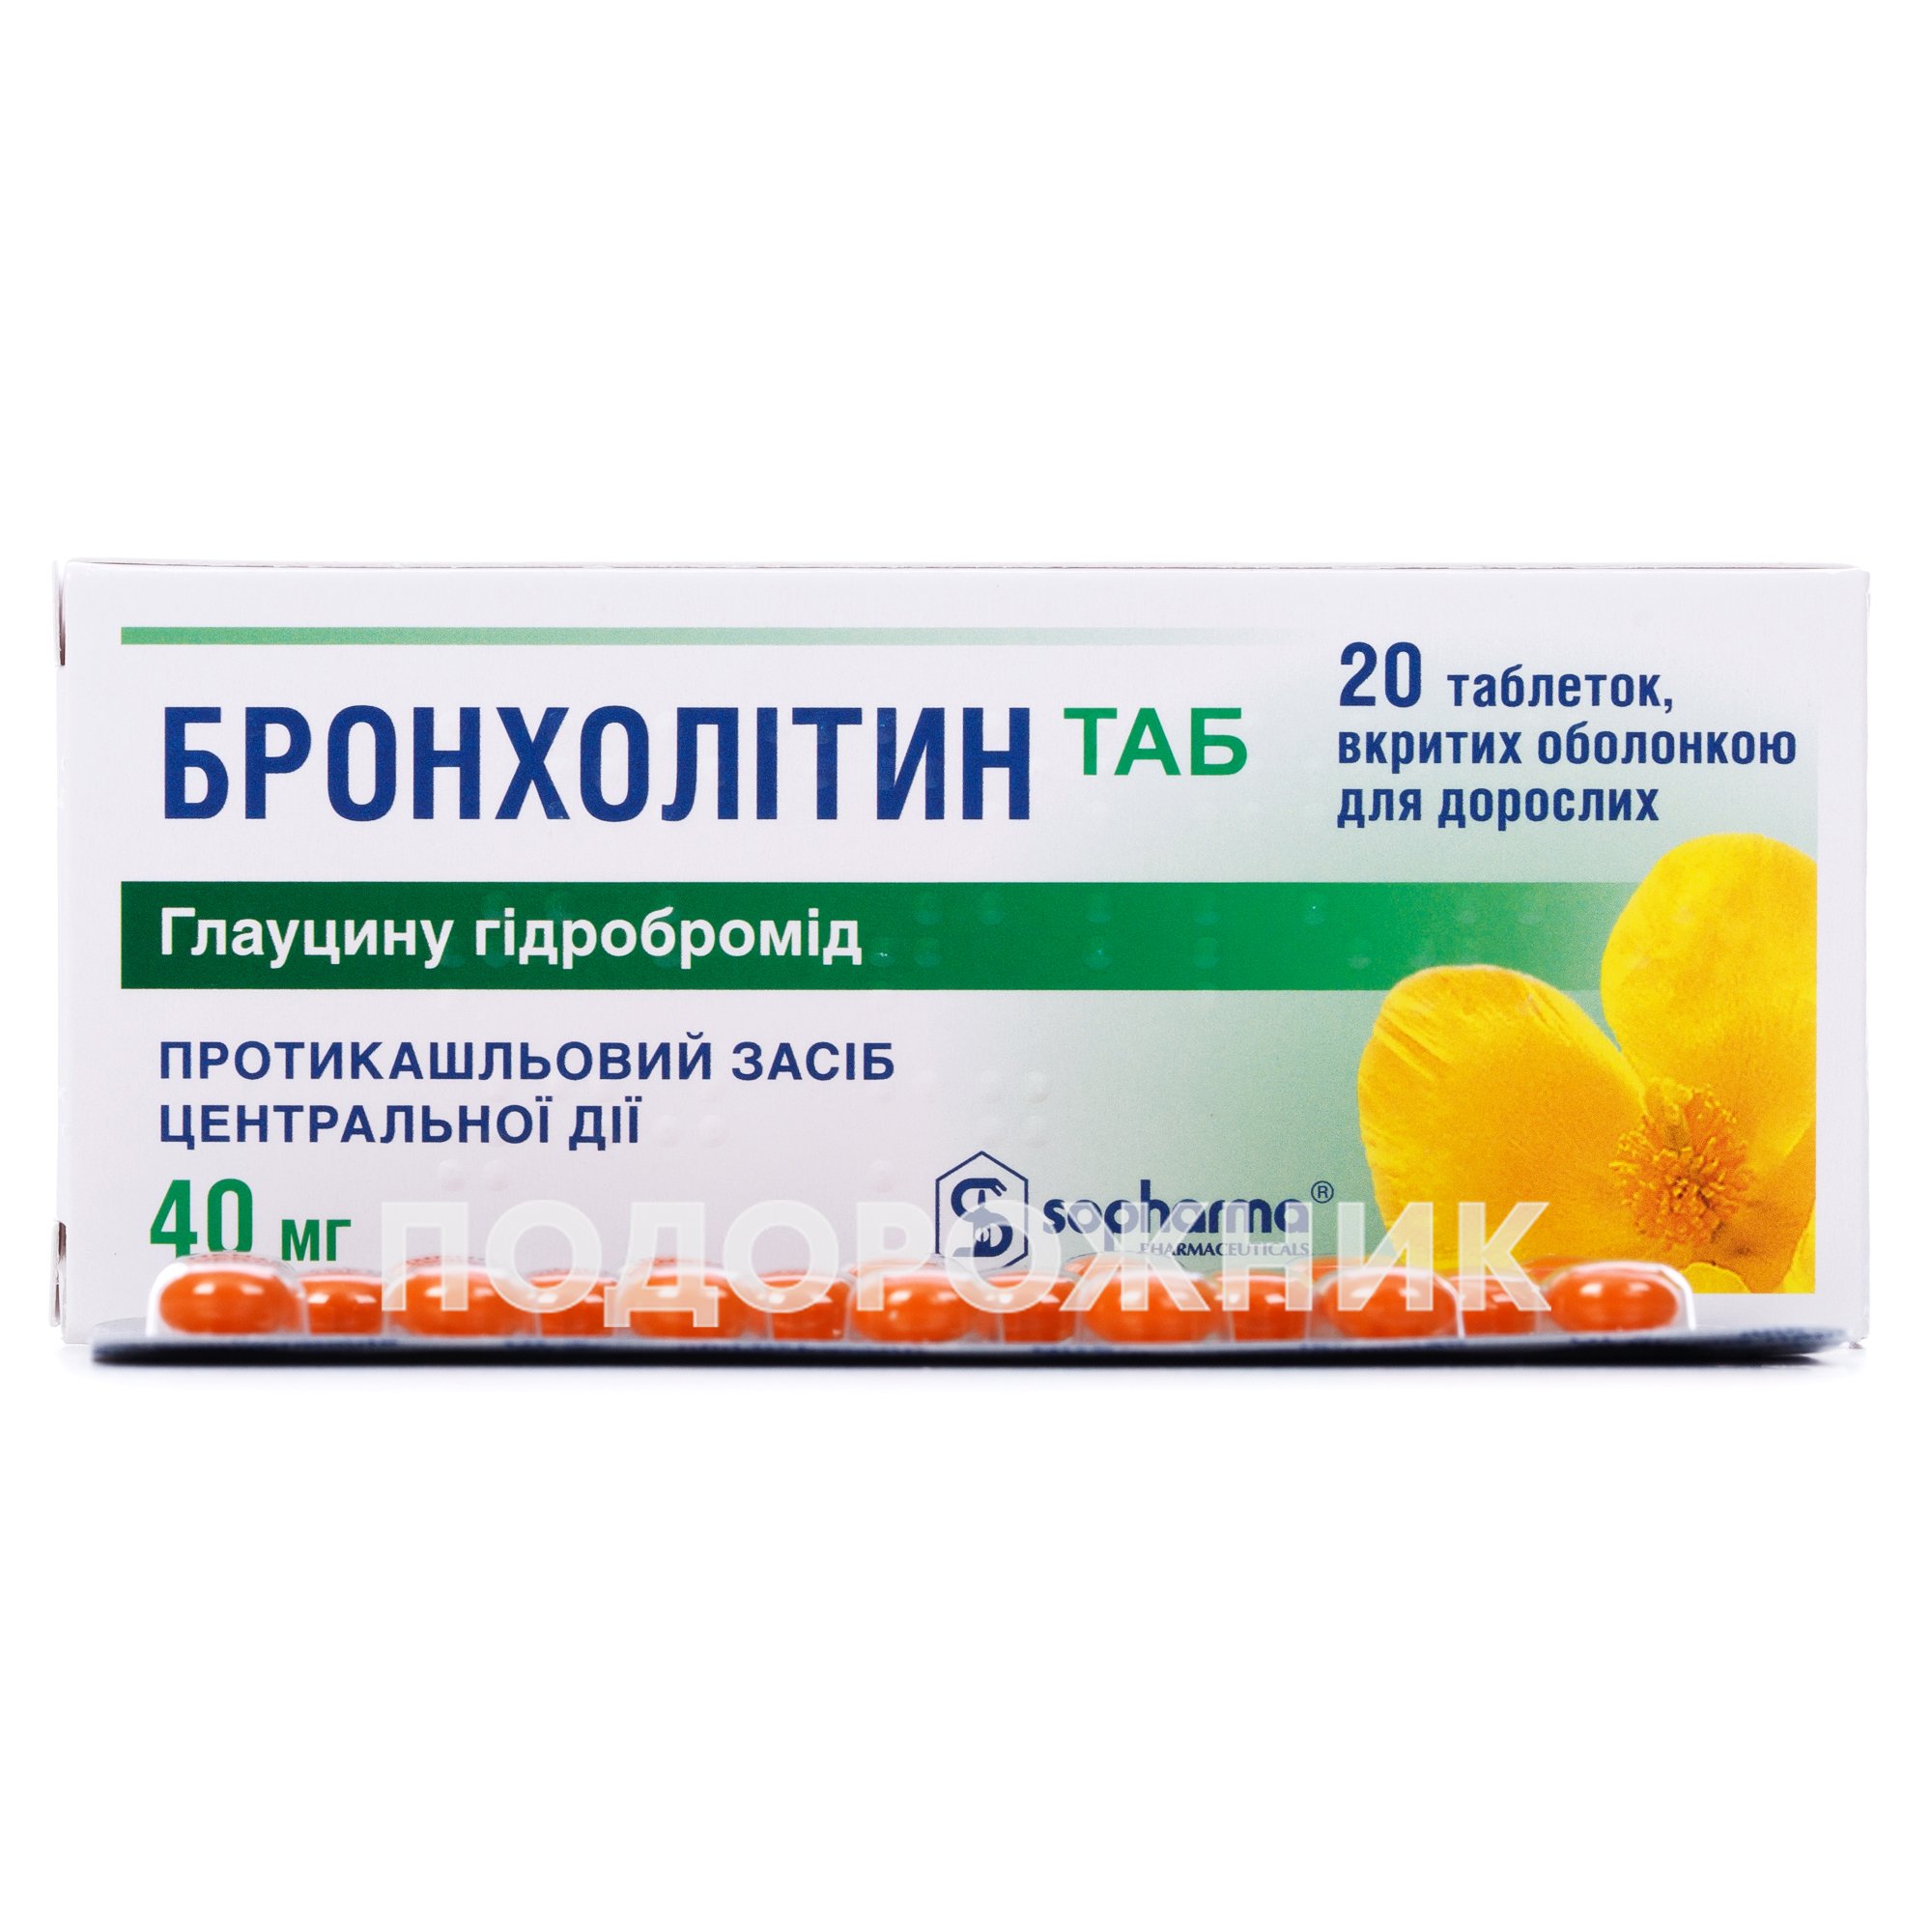 Бронхолитин таблетки по 40 мг, 20 шт.: инструкция, цена, отзывы .